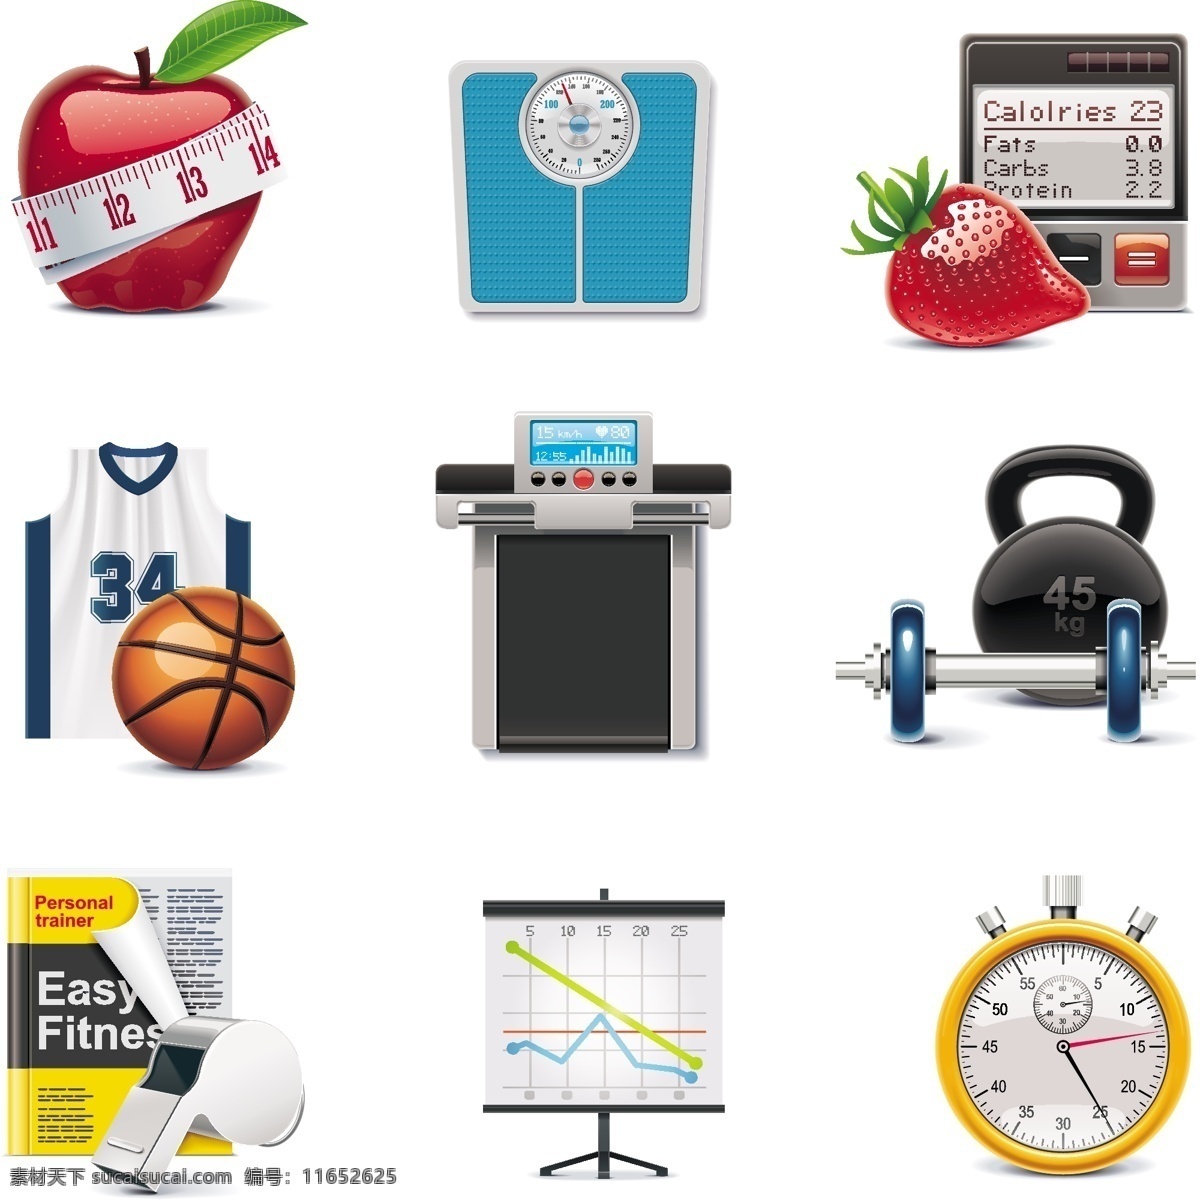 草莓 格式 篮球 米尺 秒表 跑步机 苹果 矢量素材 体育 图标 常见 矢量 二 关键字 球衣 哨子 运动 哑铃